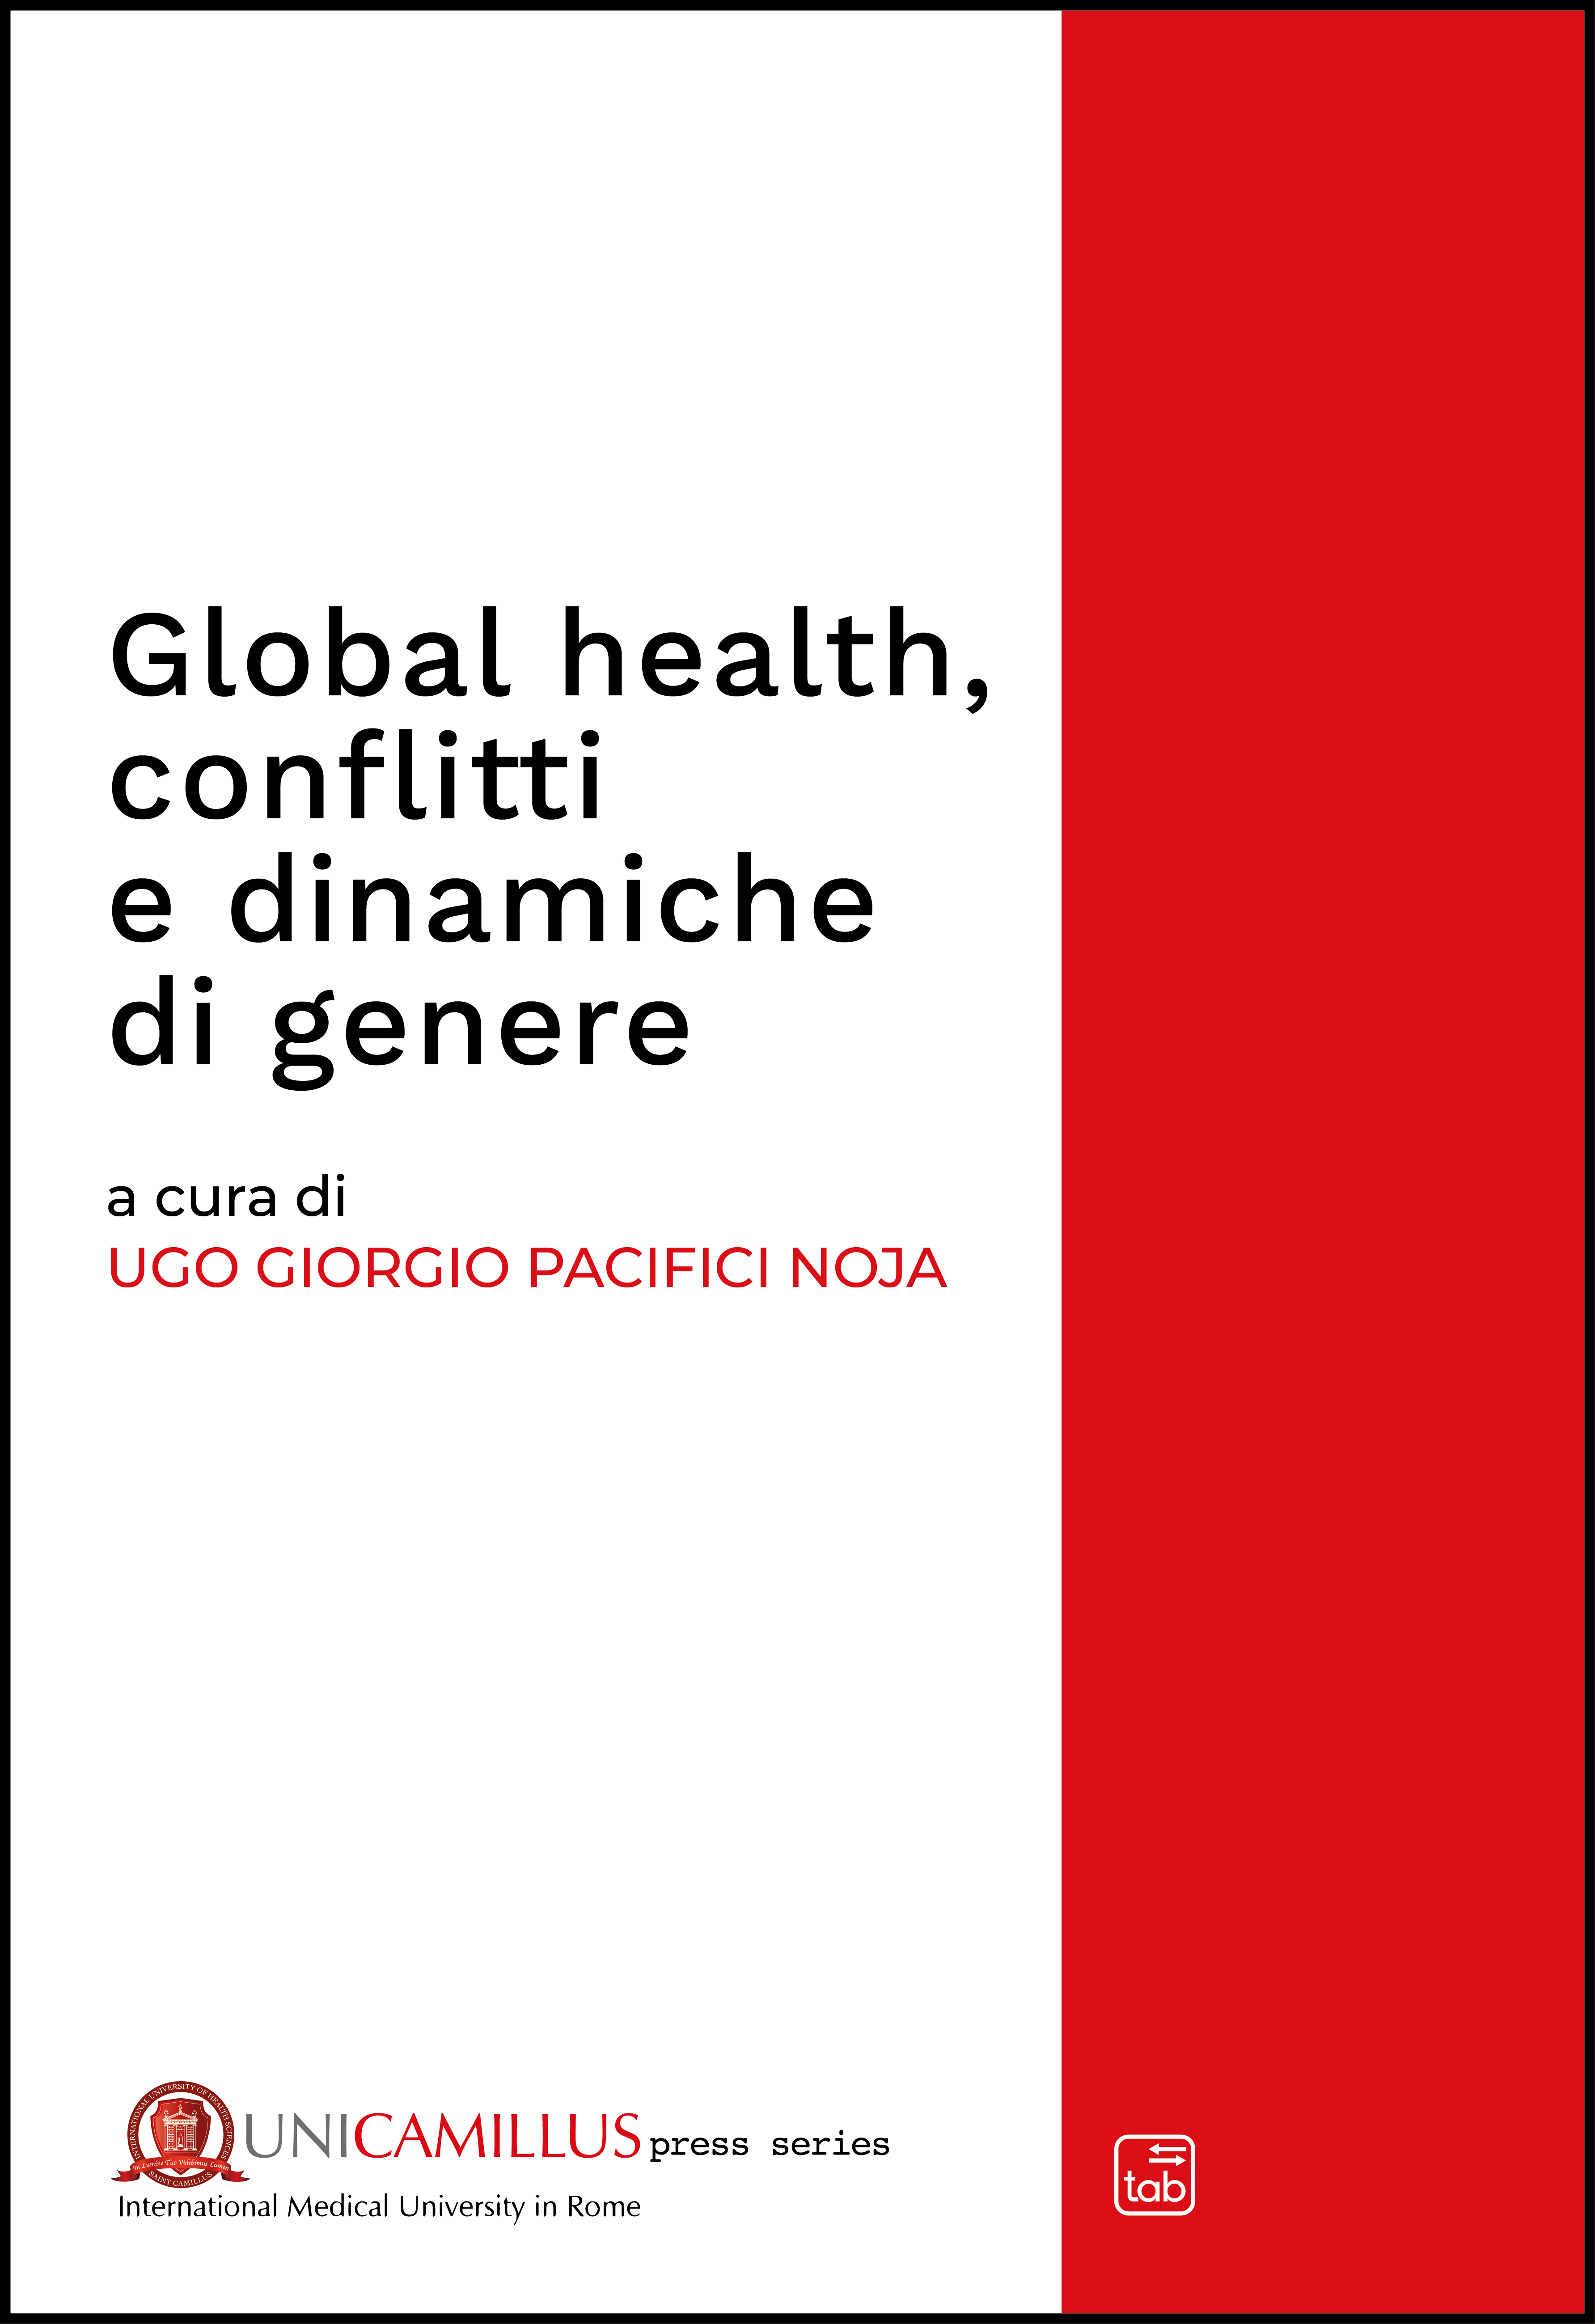 Global health, conflitti e dinamiche di genere